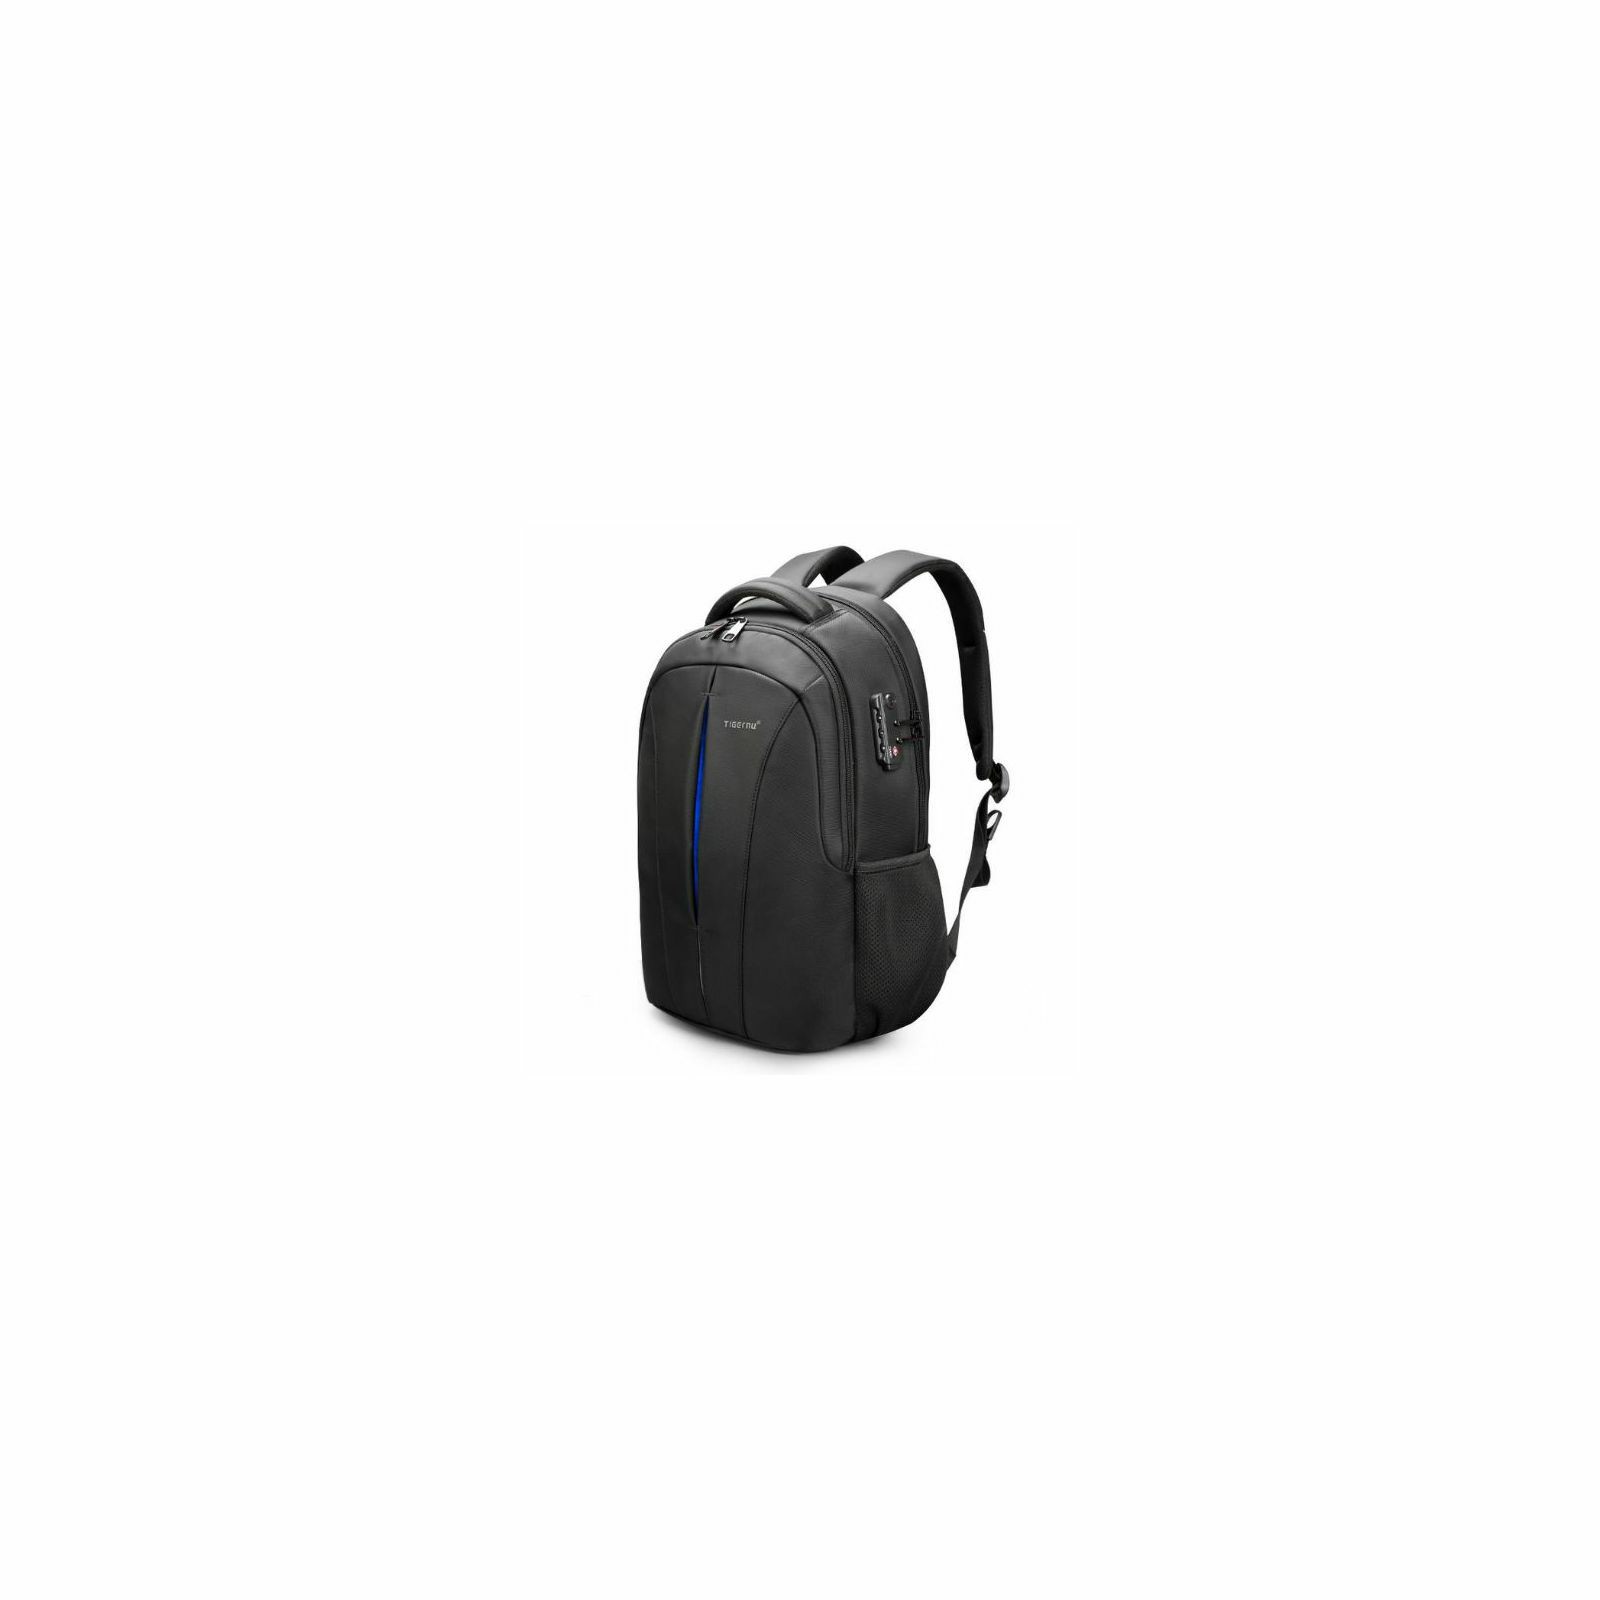 tigernu-laptop-backpack-sinope-156-black-blue-26119-6928112300051_1.jpg